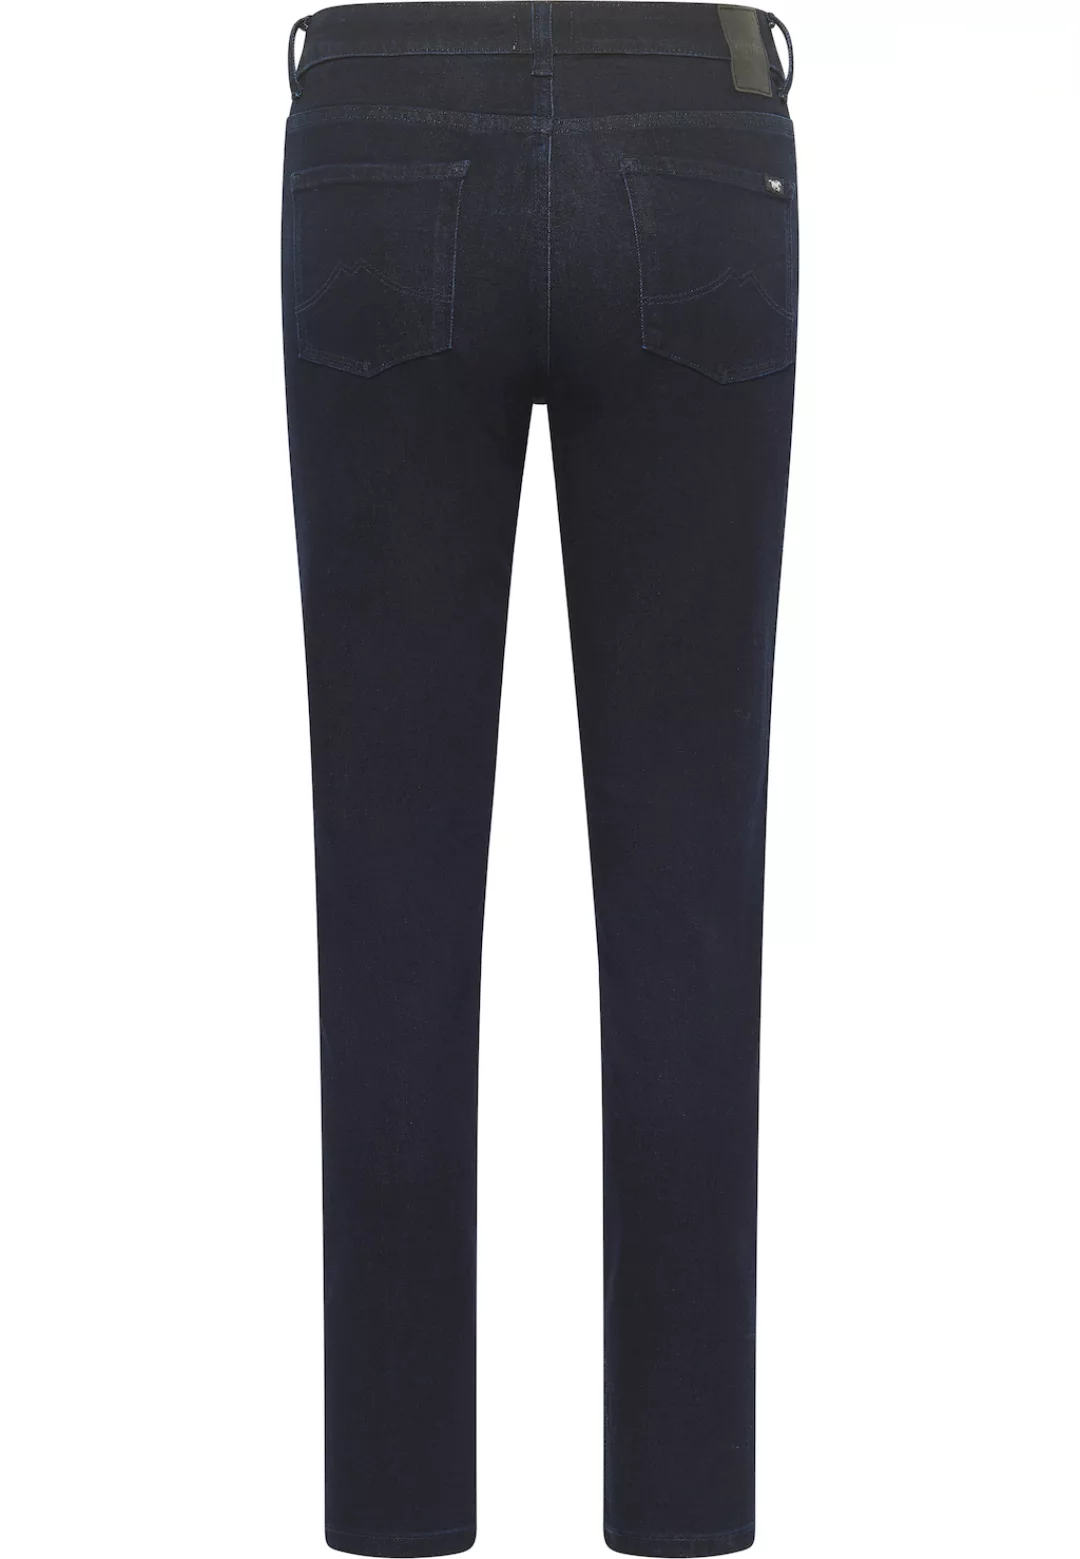 Mustang Damen Jeans CROSBY Relaxed Slim Fit - Blau - Dark Blue Denim günstig online kaufen